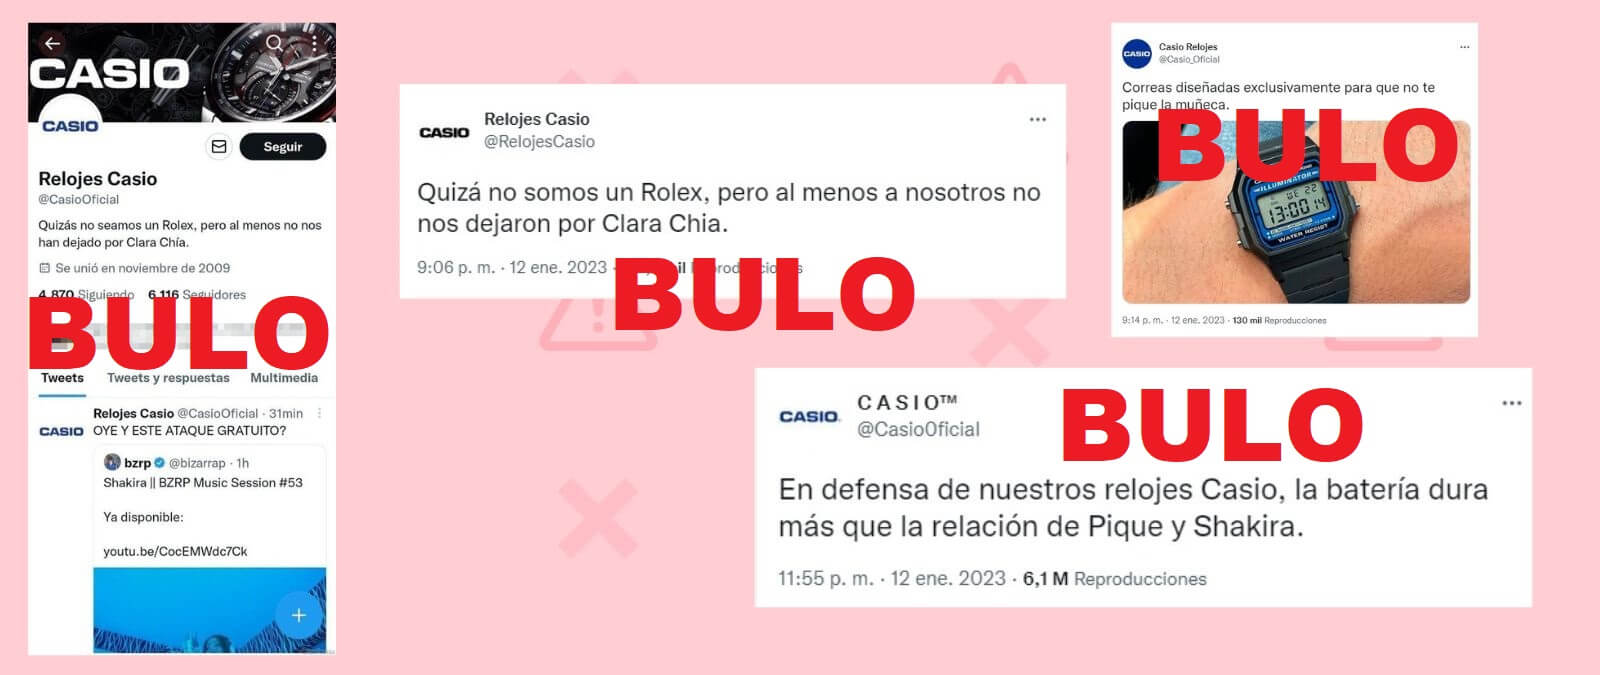 Las cuentas de Twitter falsas que se hacen pasar por Casio para difundir mensajes sobre Shakira y Piqué